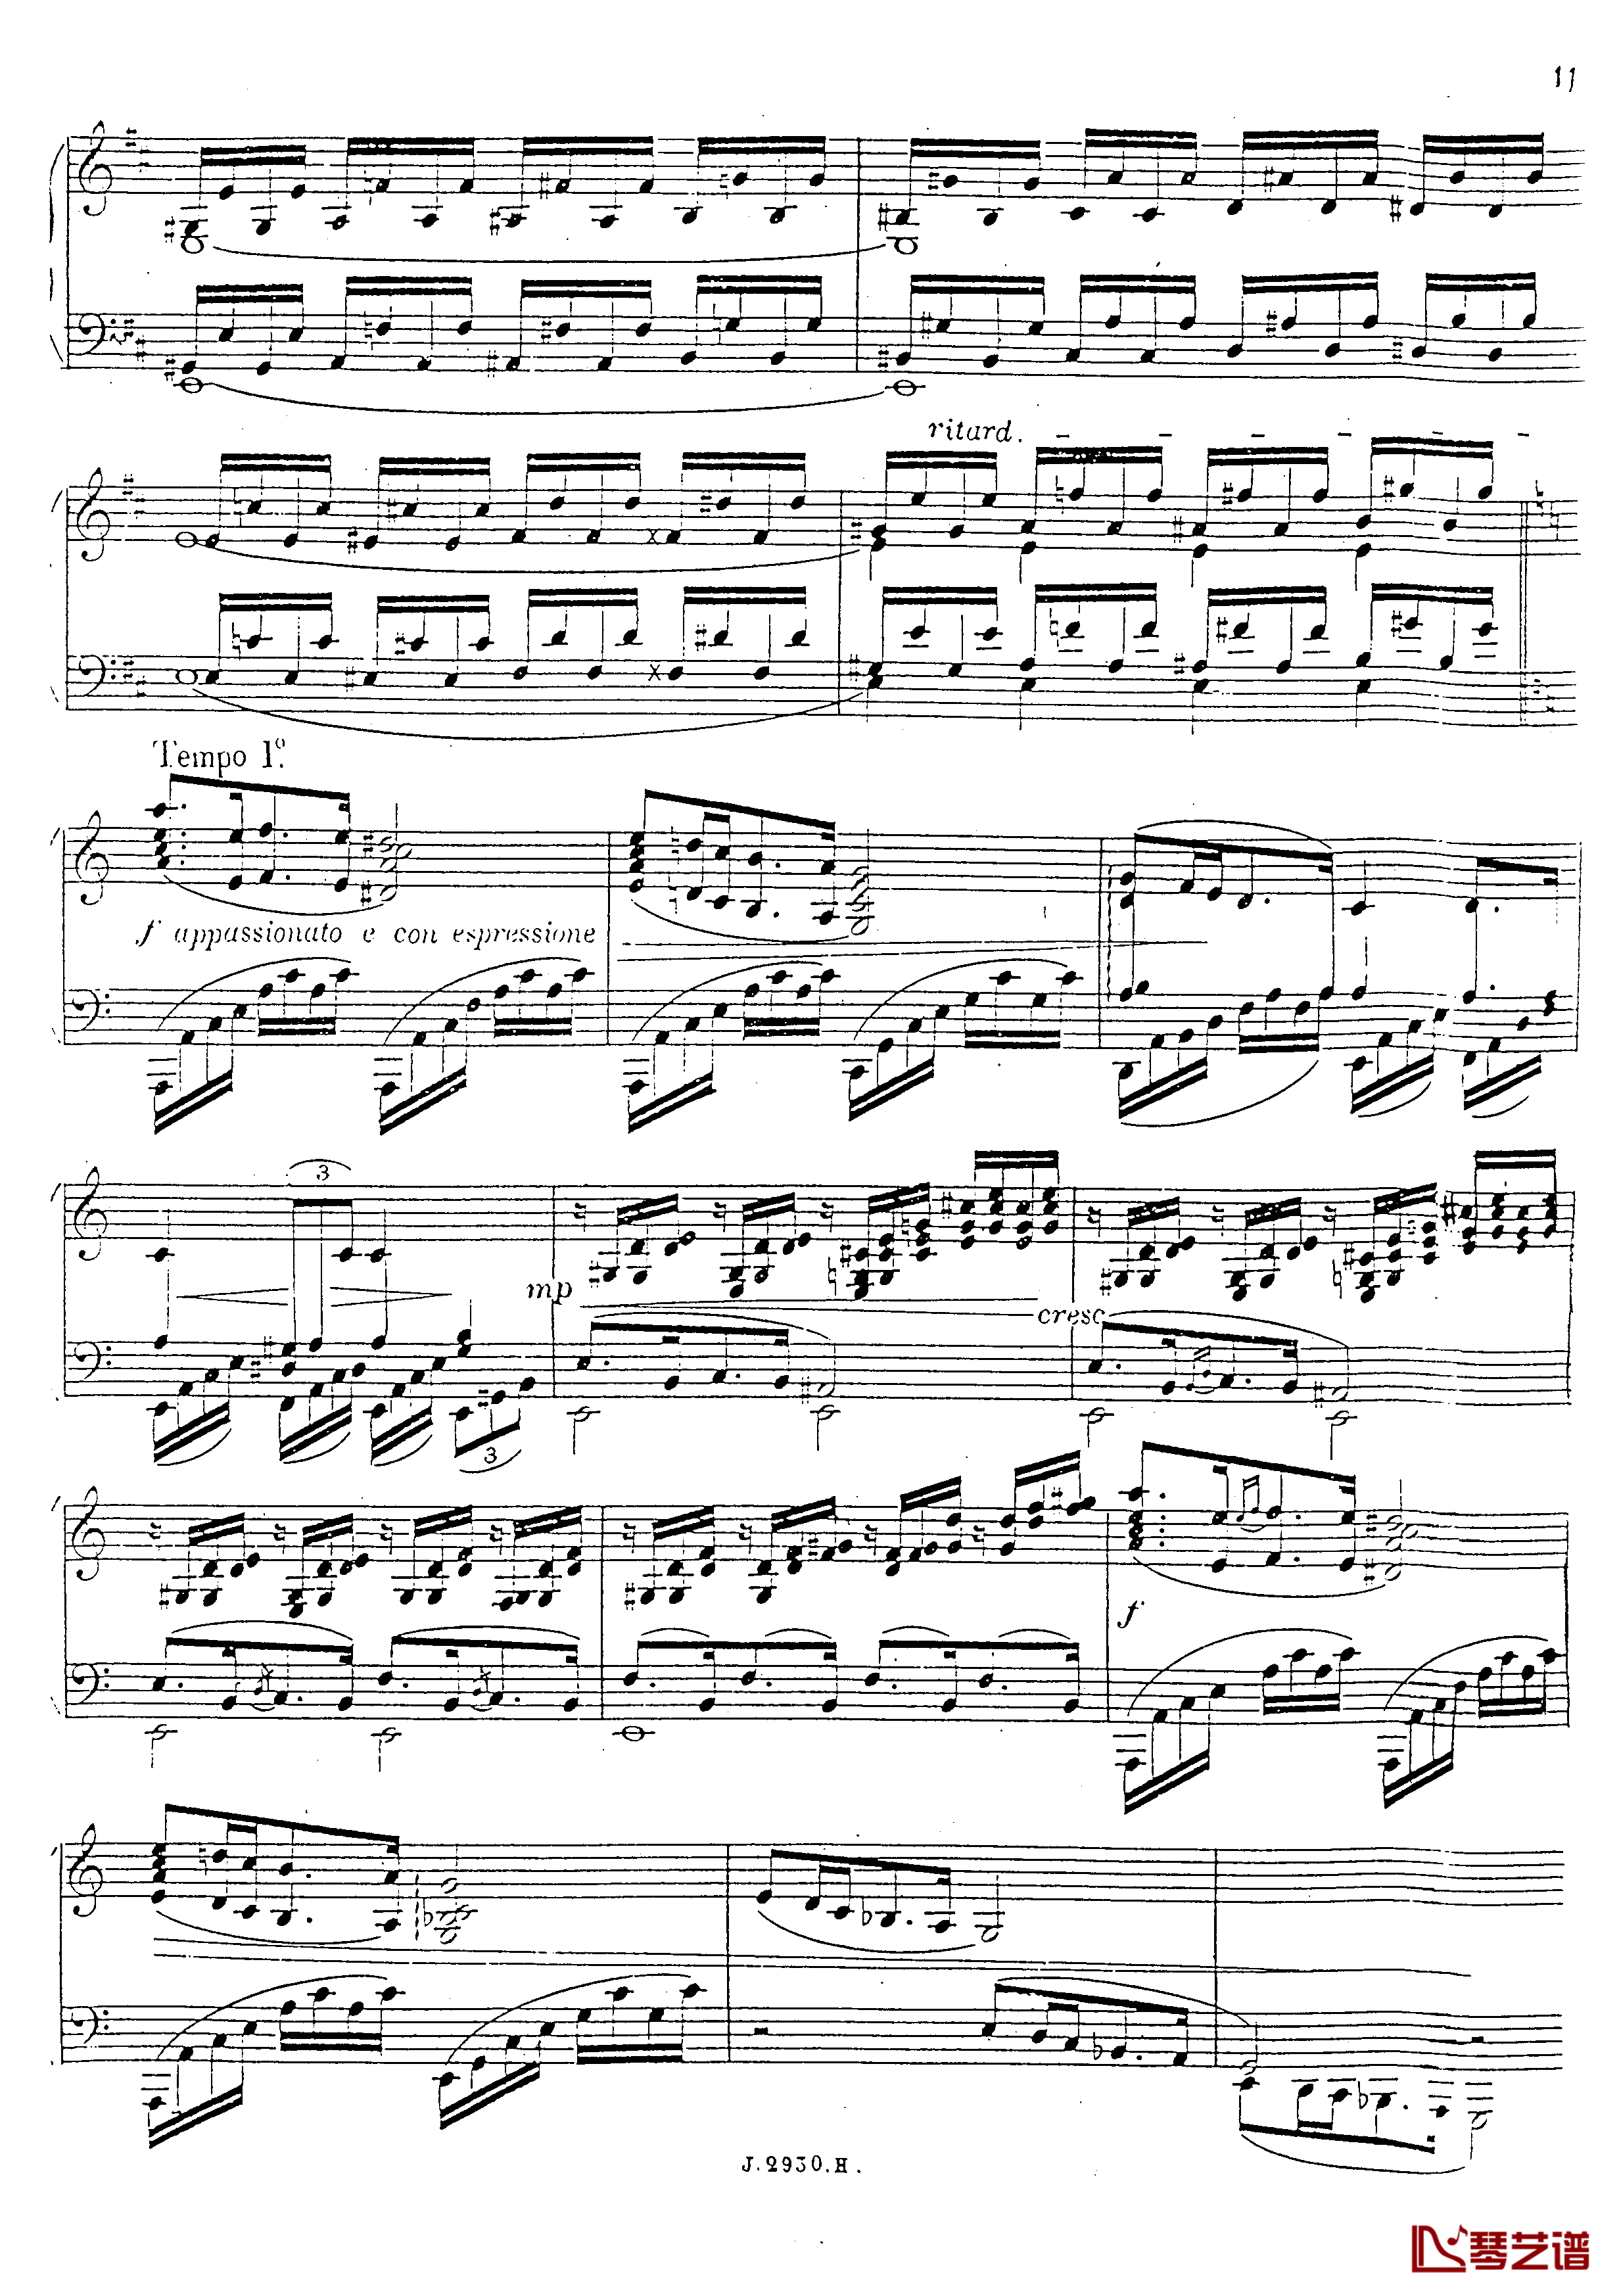 a小调第四钢琴奏鸣曲钢琴谱-安东 鲁宾斯坦- Op.10012